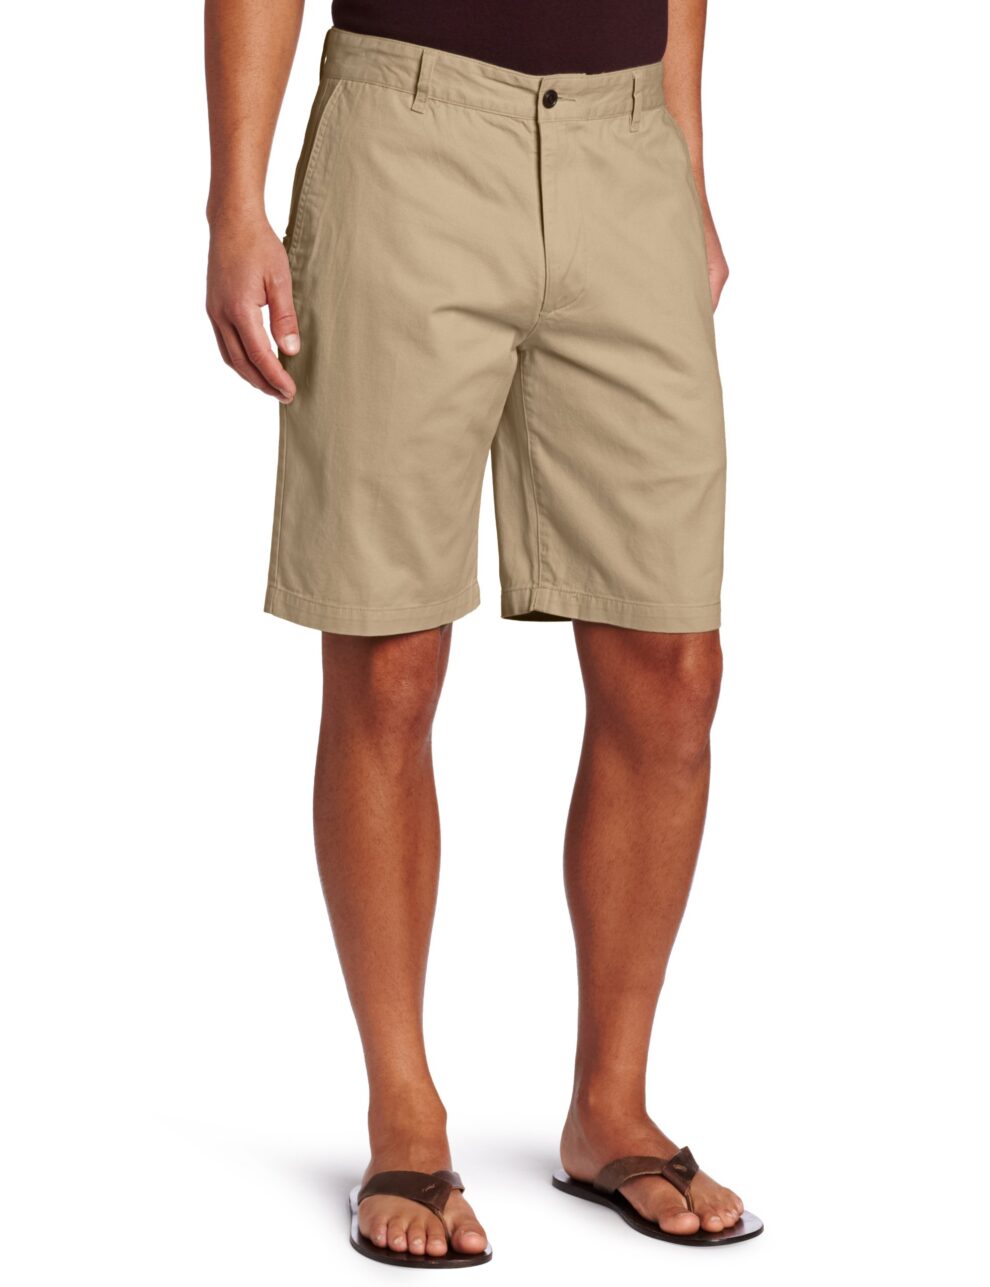 Combinaciones clásicas de shorts para hombres